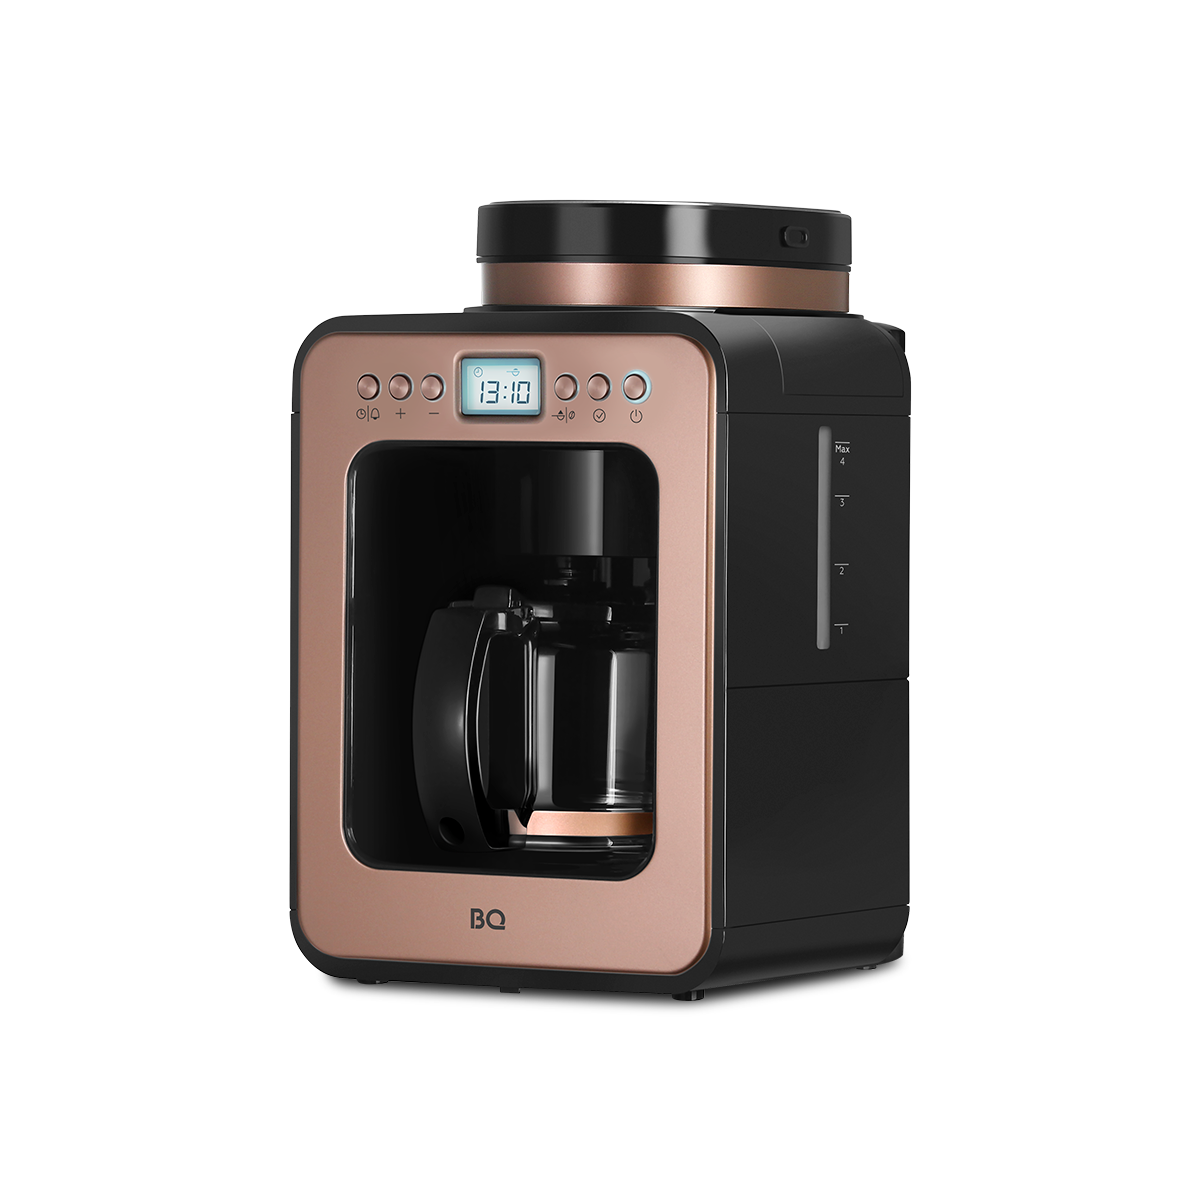 Кофеварка капельного типа BQ CM7001 золотистый, розовый, черный кофеварка капельного типа bq cm7001 золотистый розовый